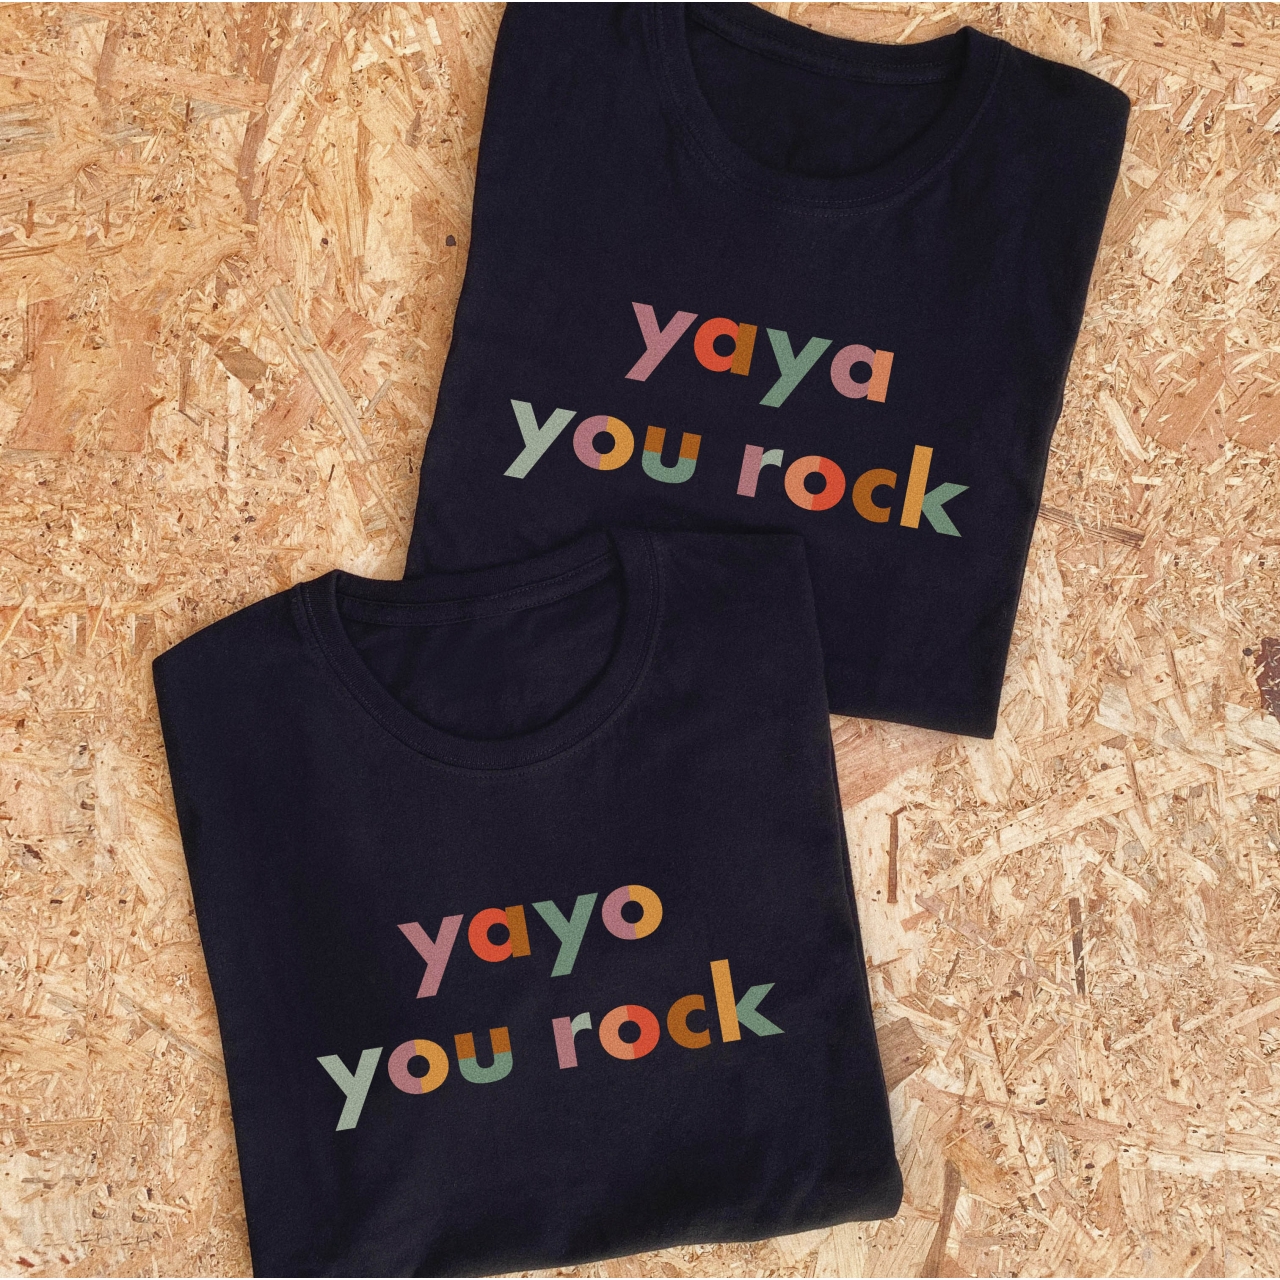 Camiseta yaya // yayo you rock